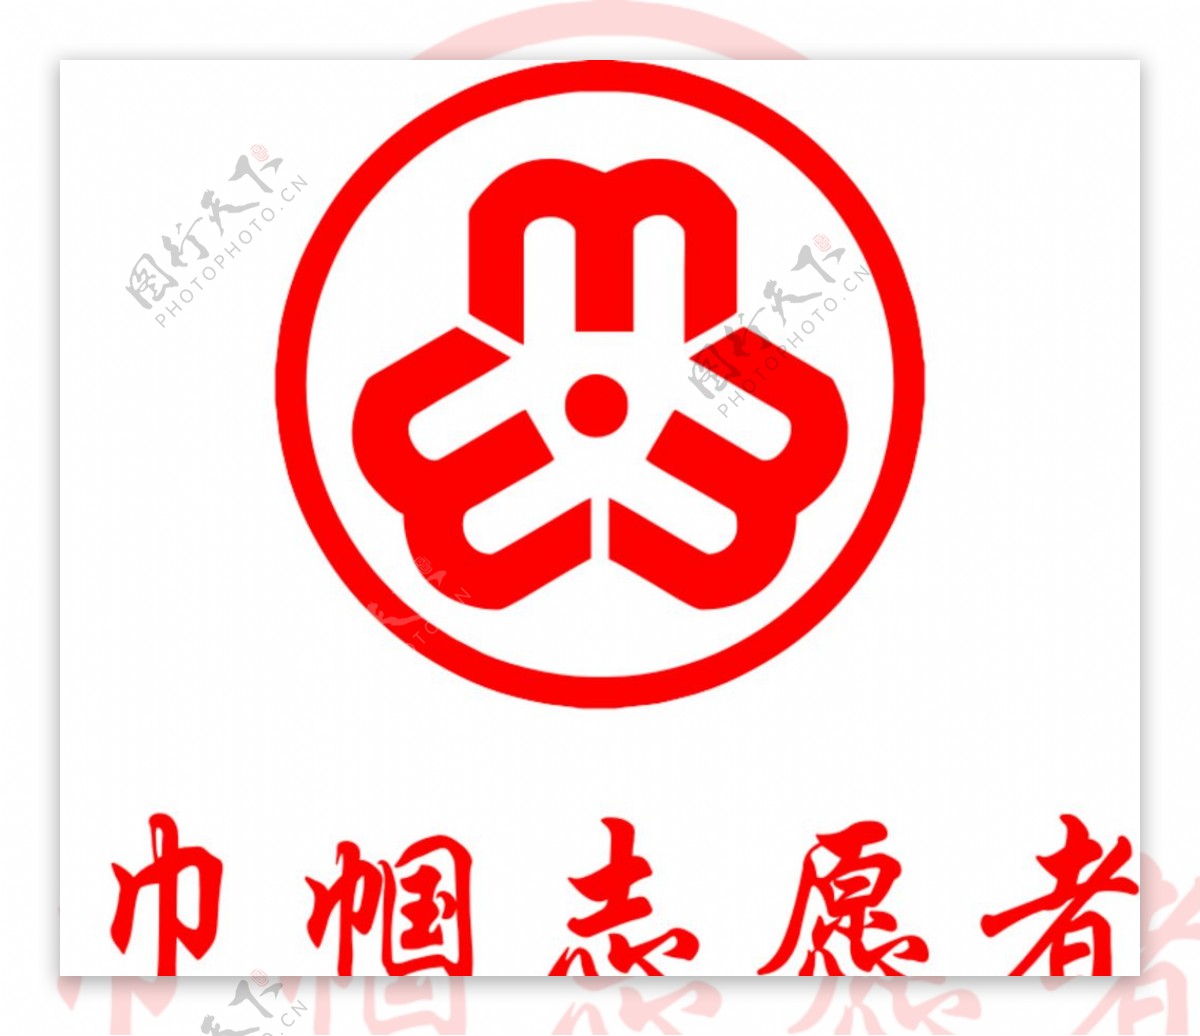 巾帼志愿者logo